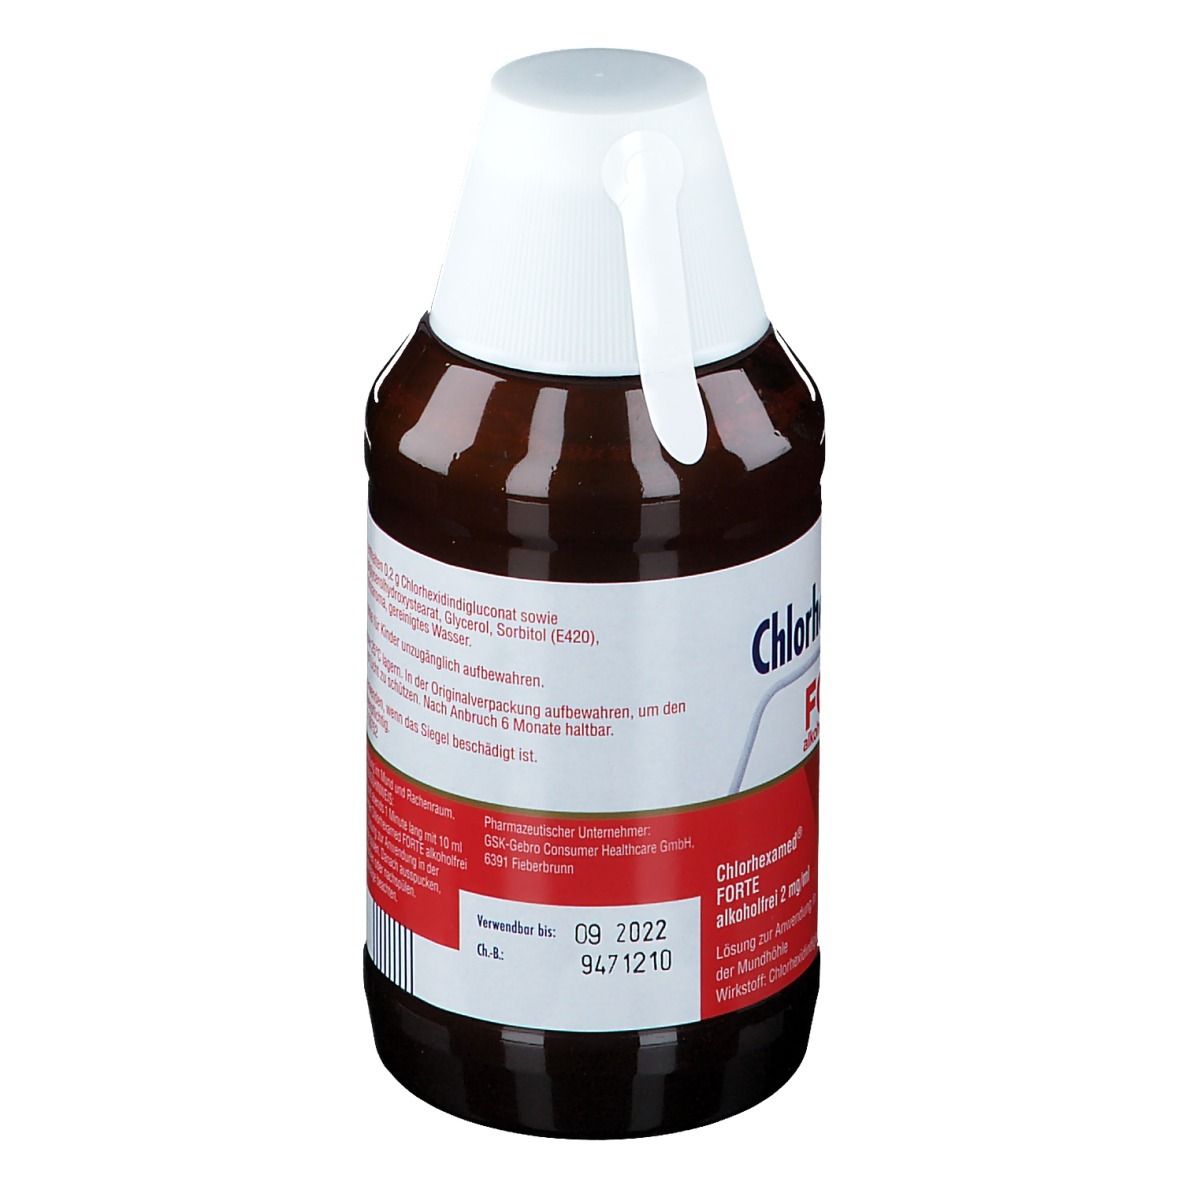 Chlorhexamed® FORTE alkoholfrei 2 mg/ml